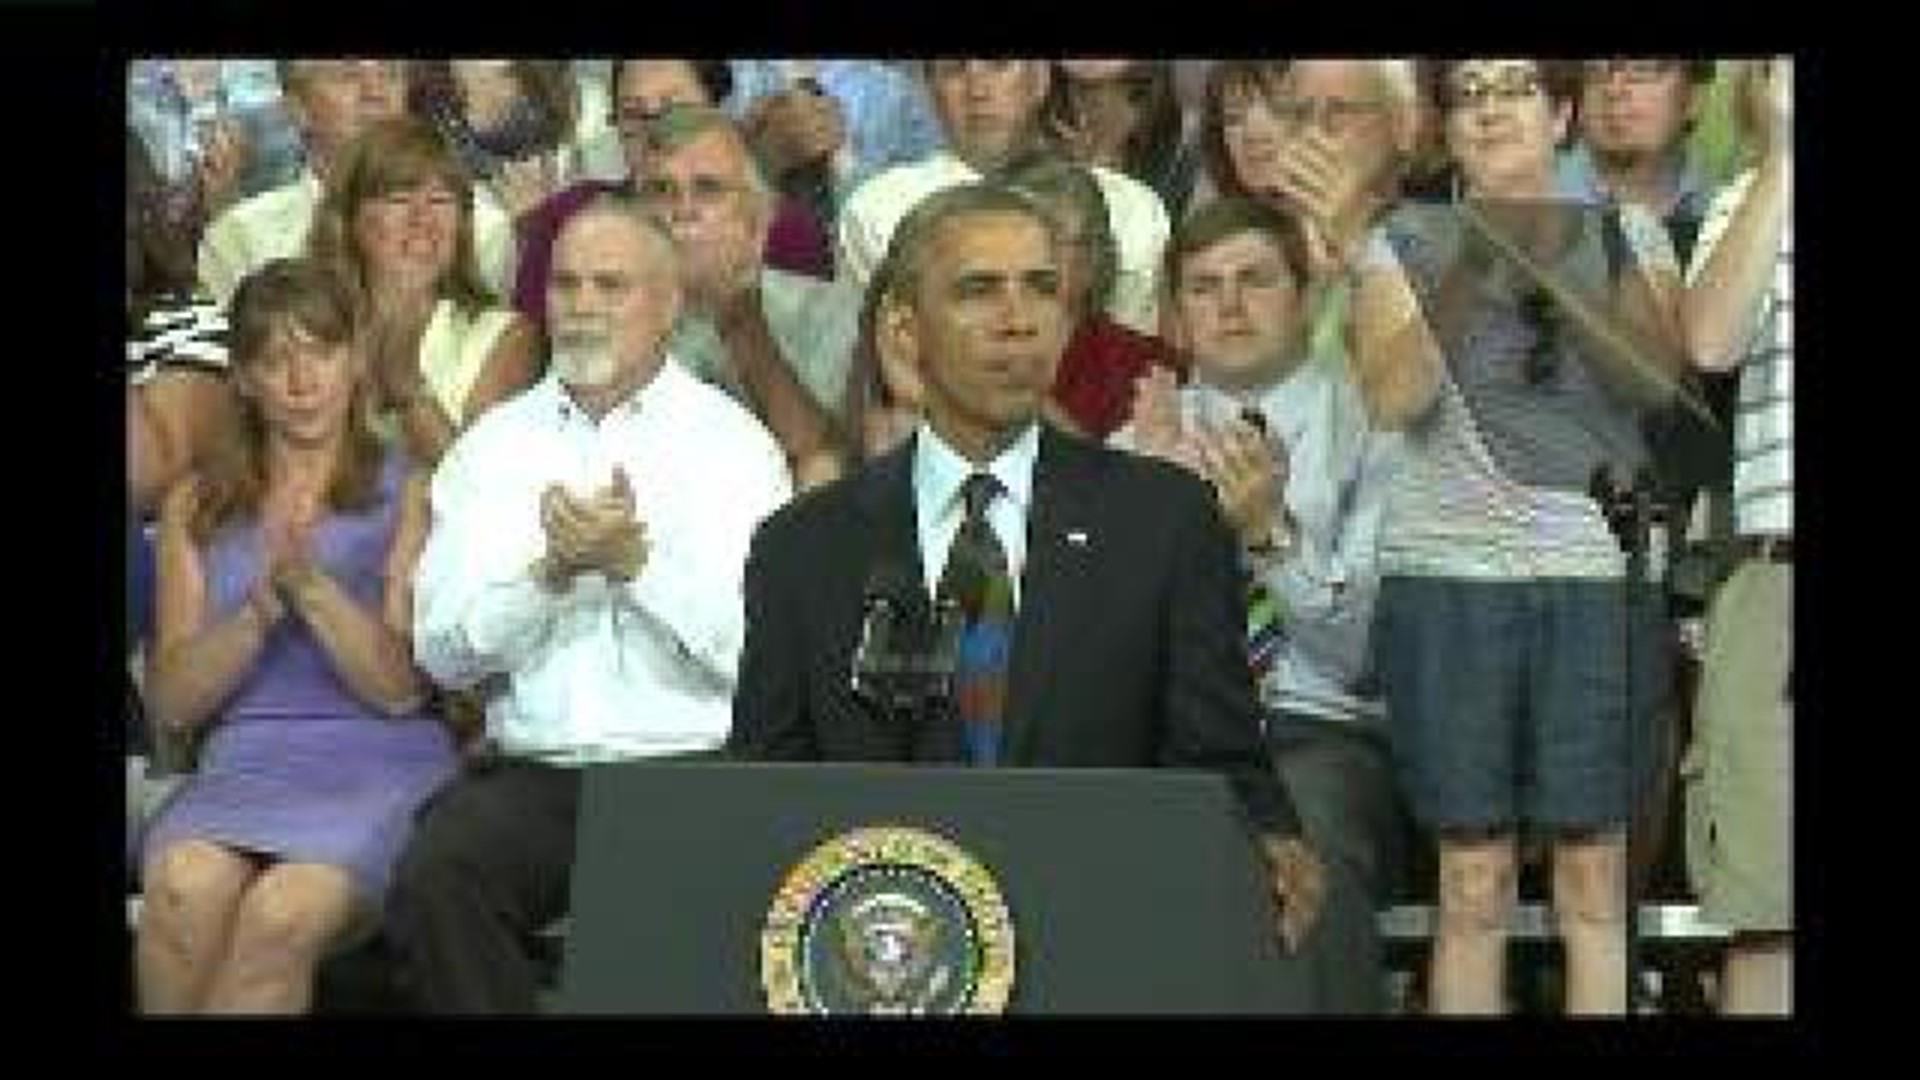 President Obama speaks in Galesburg - clip 4 of 7